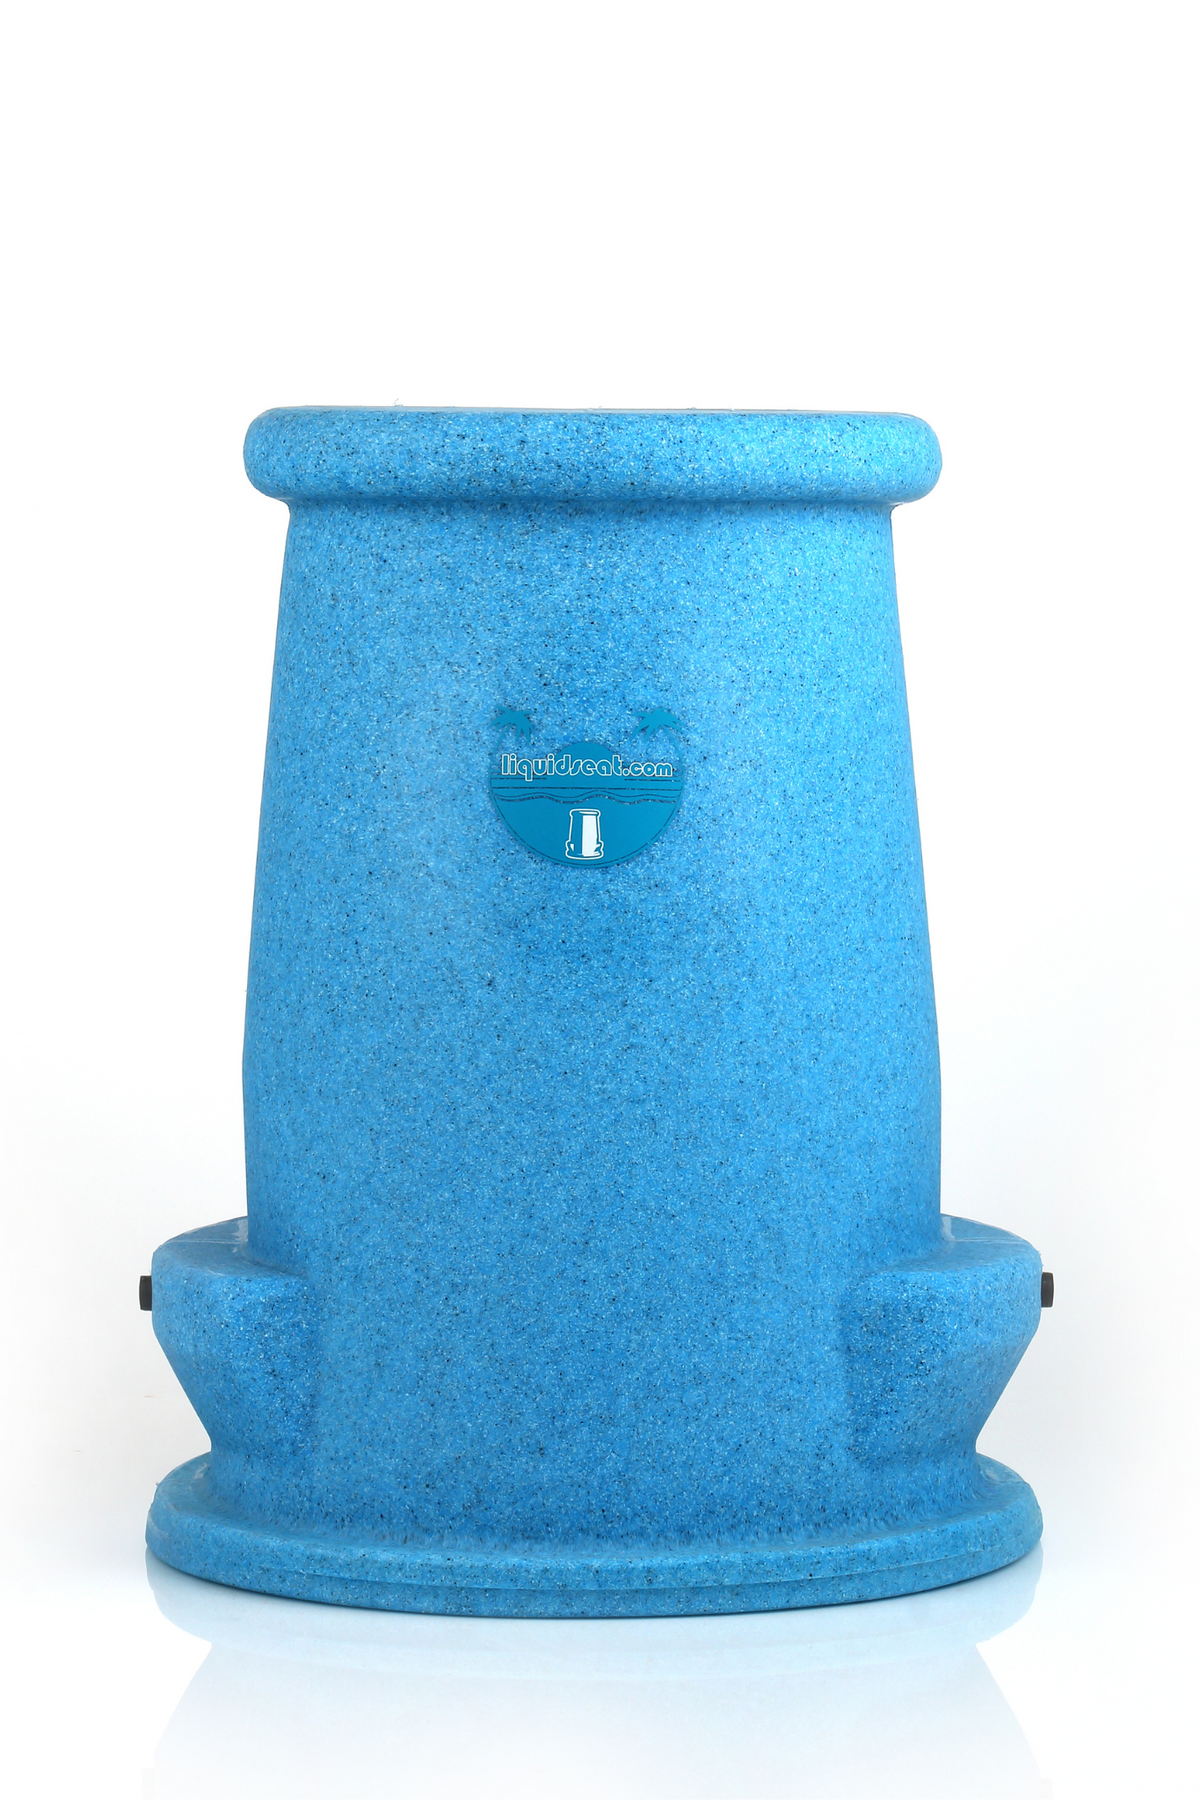 Liquidseat Swim-up Bar Stool - Light Blue Granite-23in